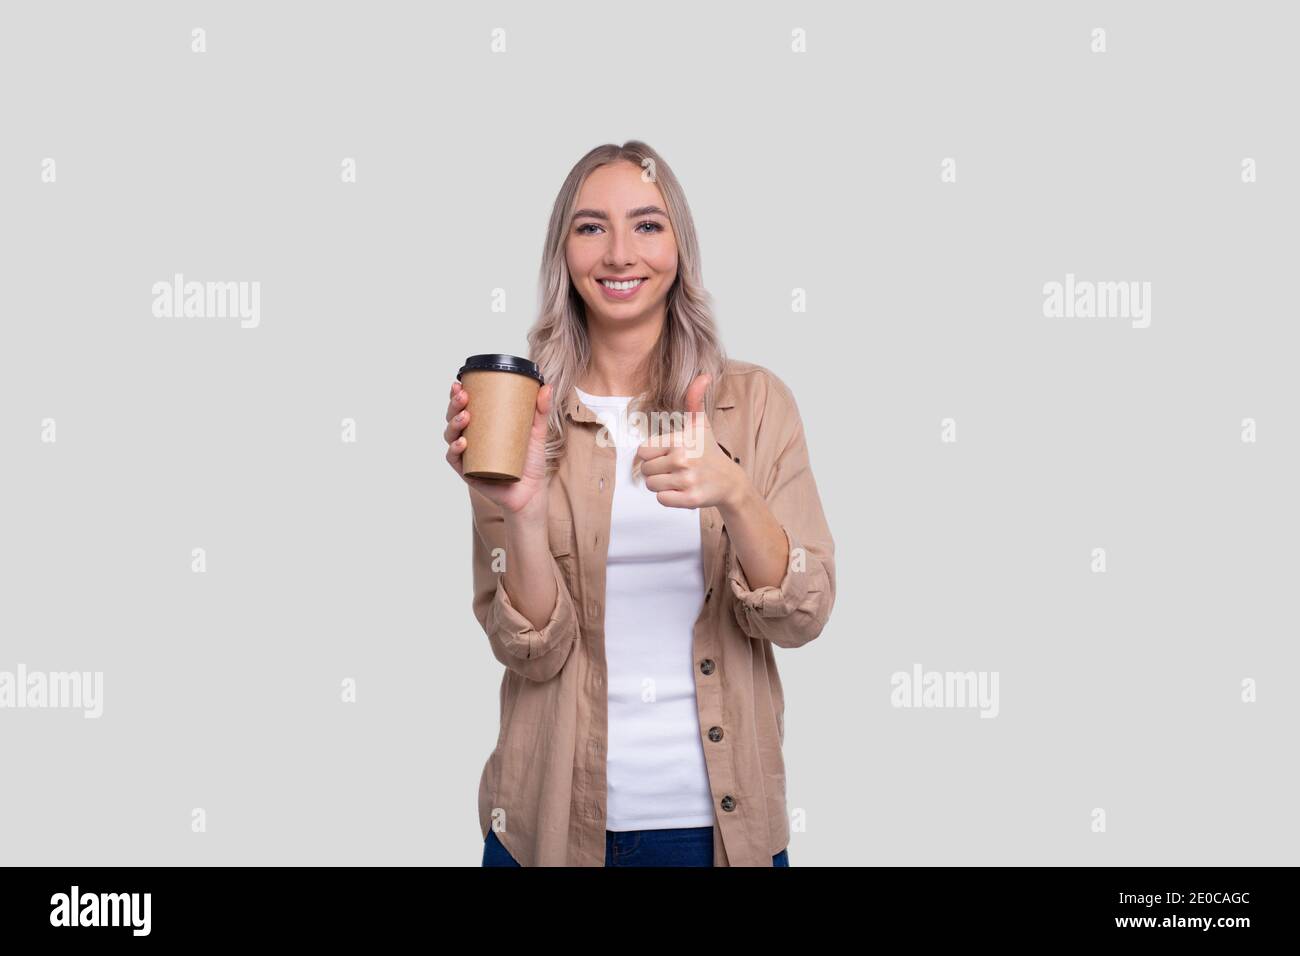 Girl Holding Take Away Coffee Cup mostrando Thumb Up. Ragazza con la tazza di caffè da andare in mani. Foto Stock